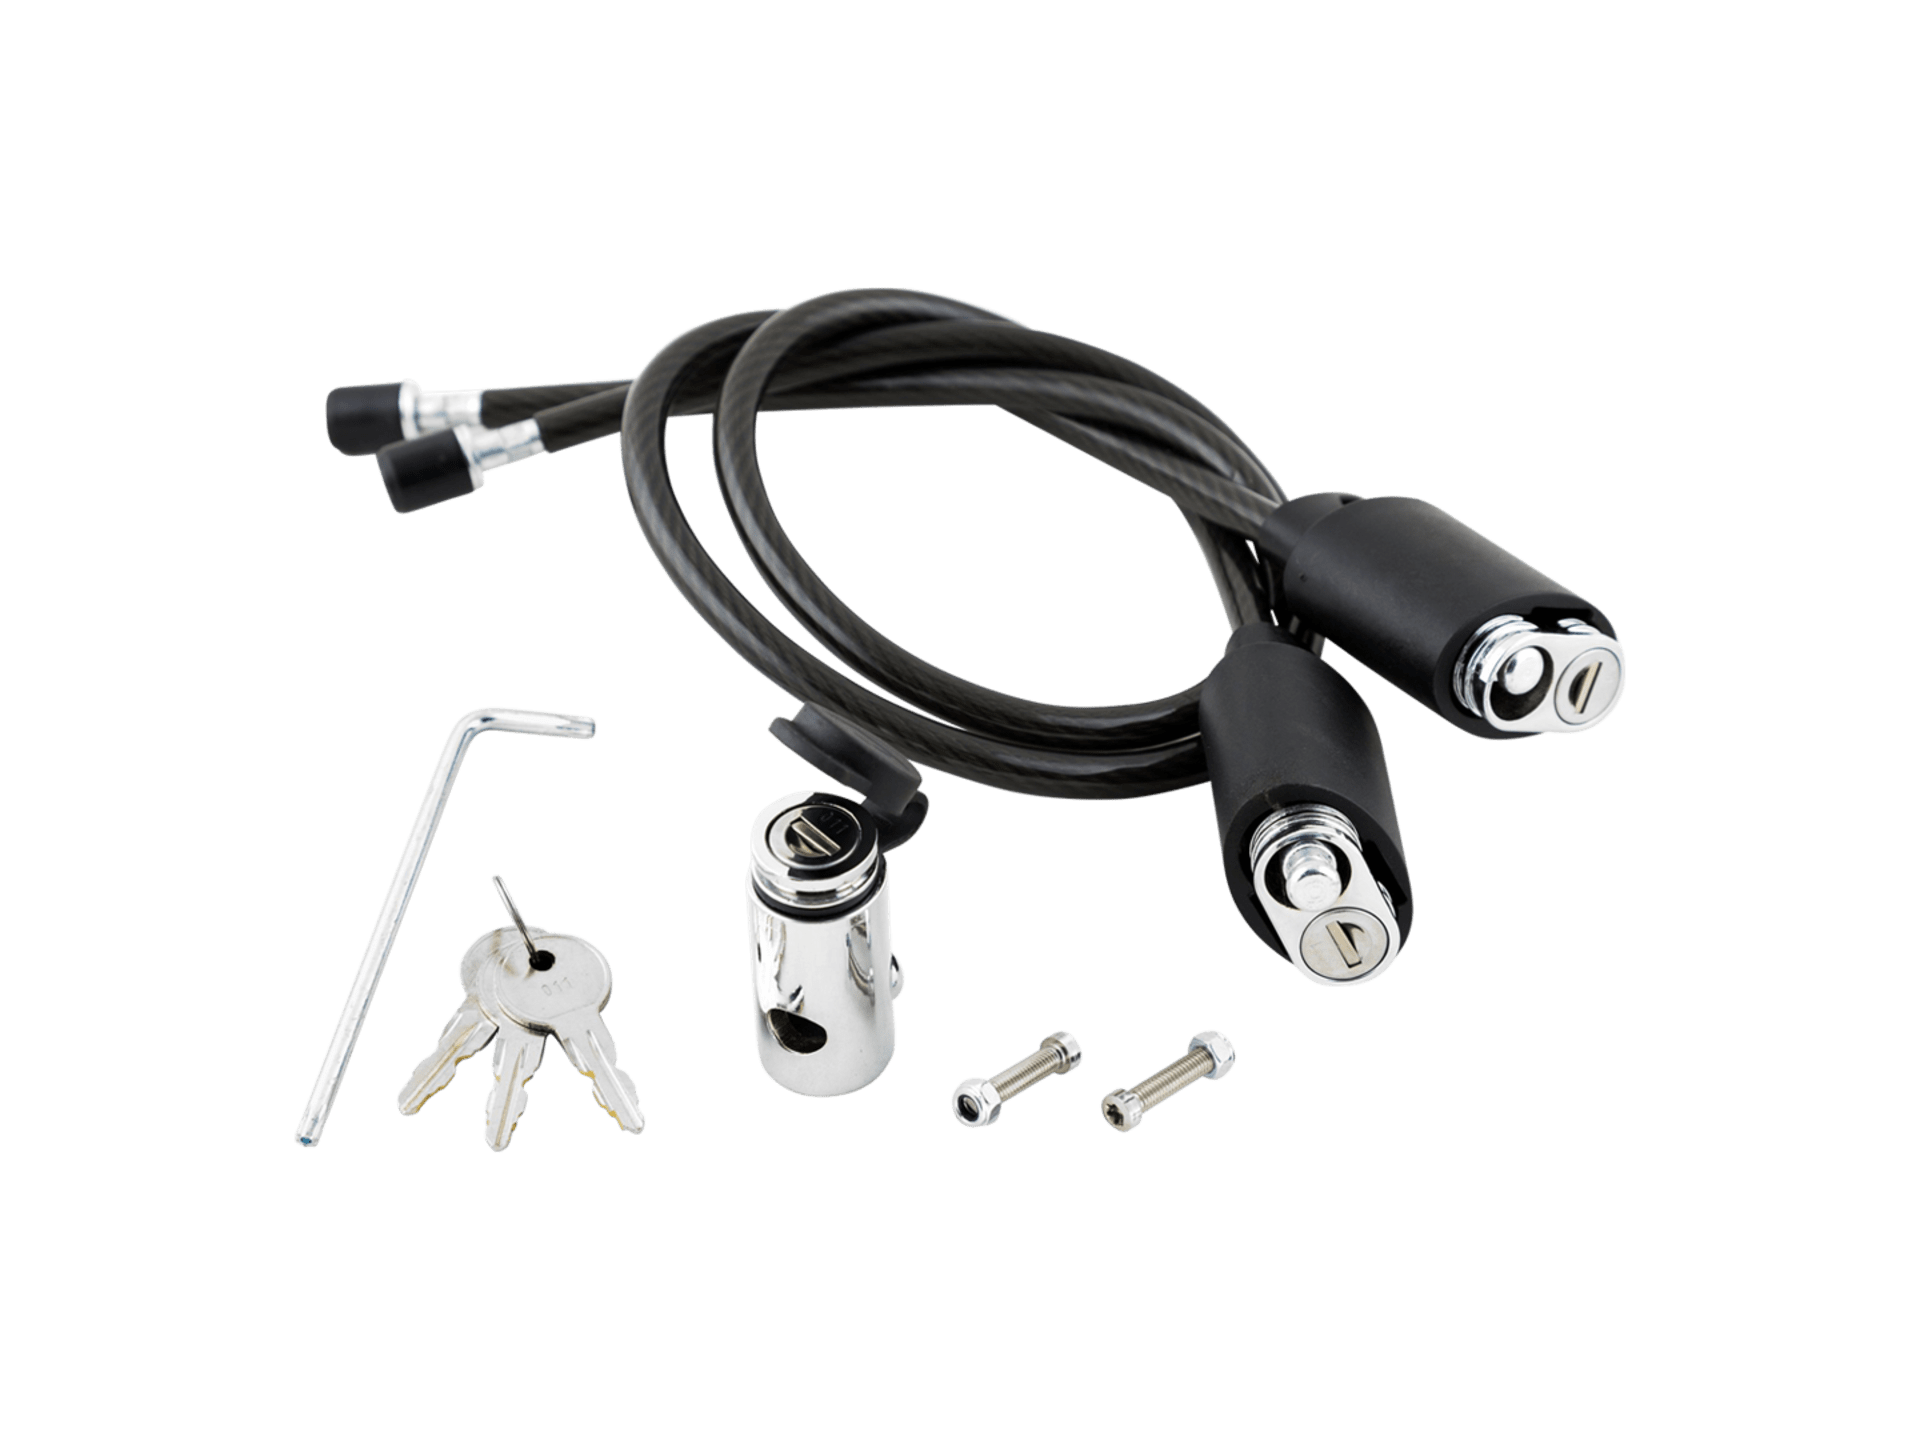 Kuat Transfer -Bike Hitch Rack Cable Lock Kit